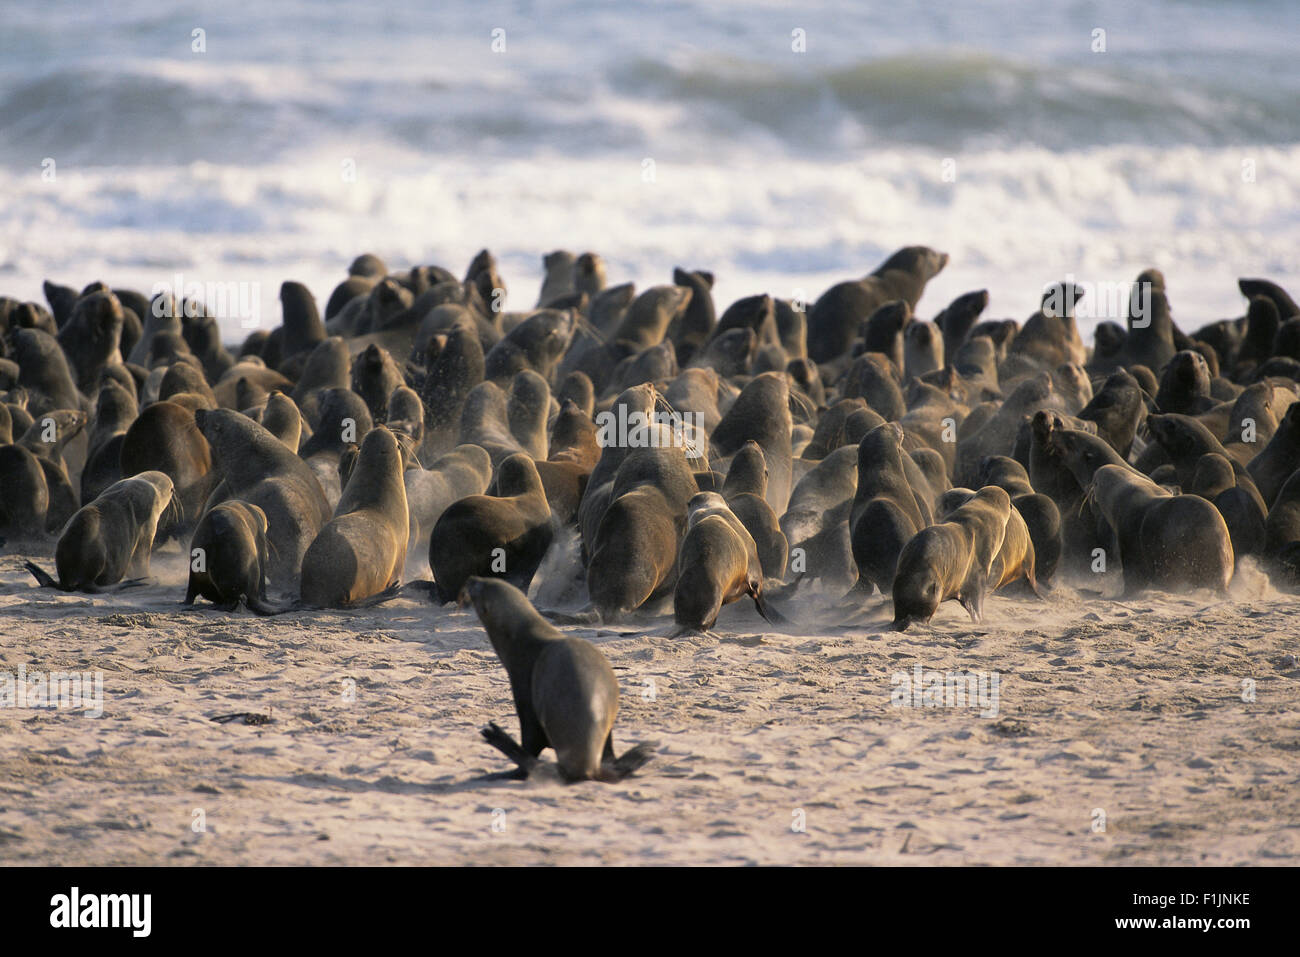 Colonie de phoques sur la plage, la Namibie, l'Afrique Banque D'Images